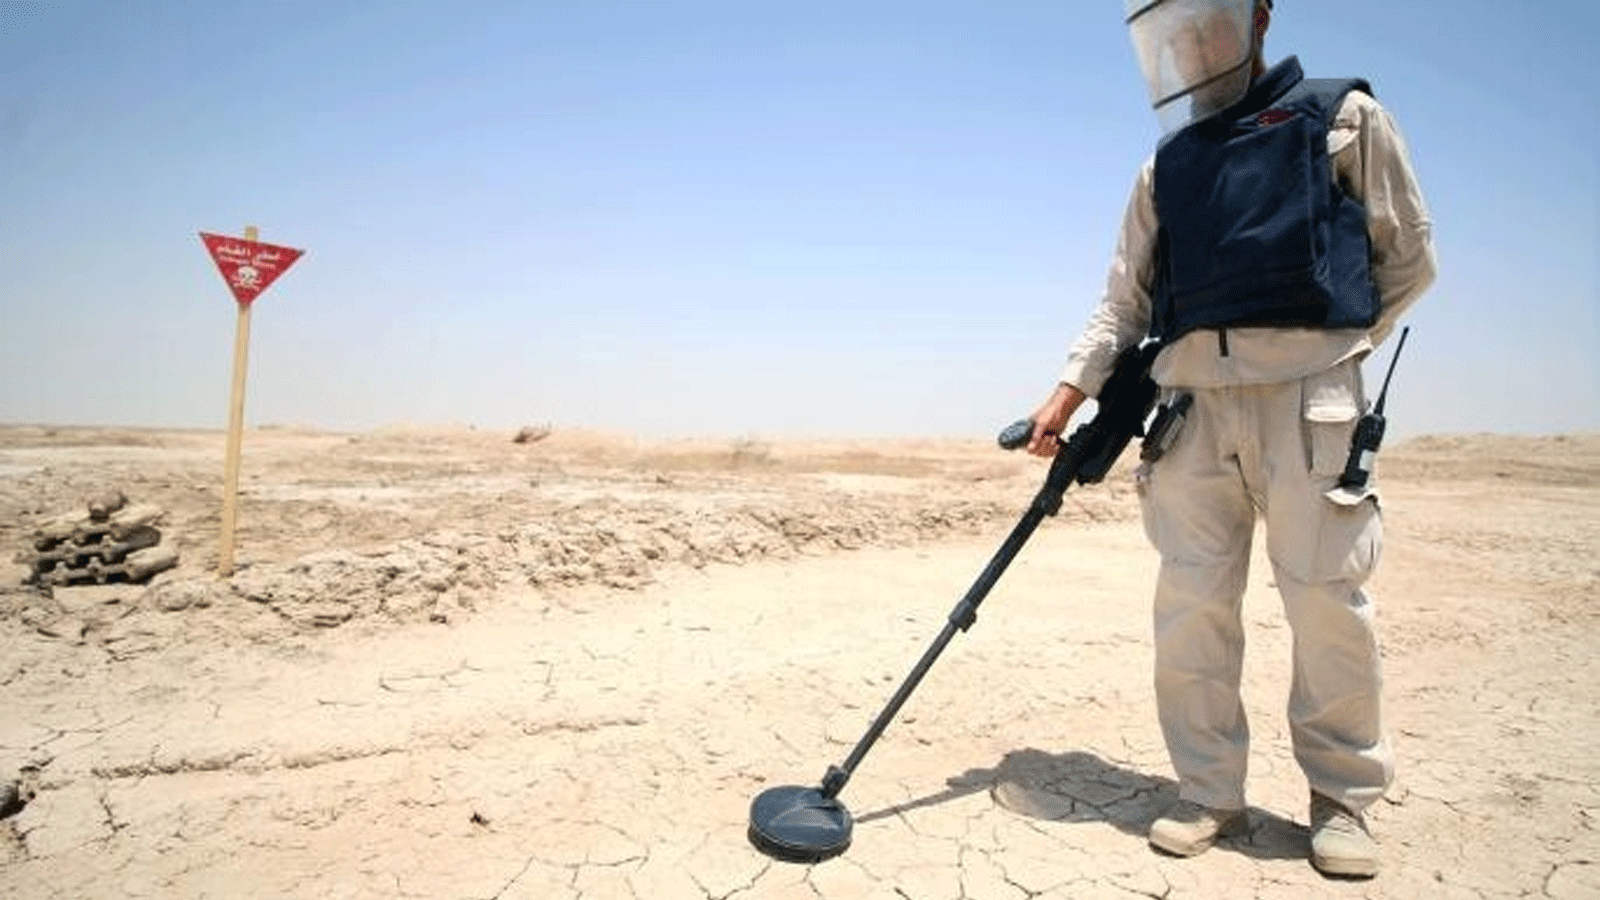 البحث عن الألغام ومخلفات الحروب في مناطق عراقية (تويتر)